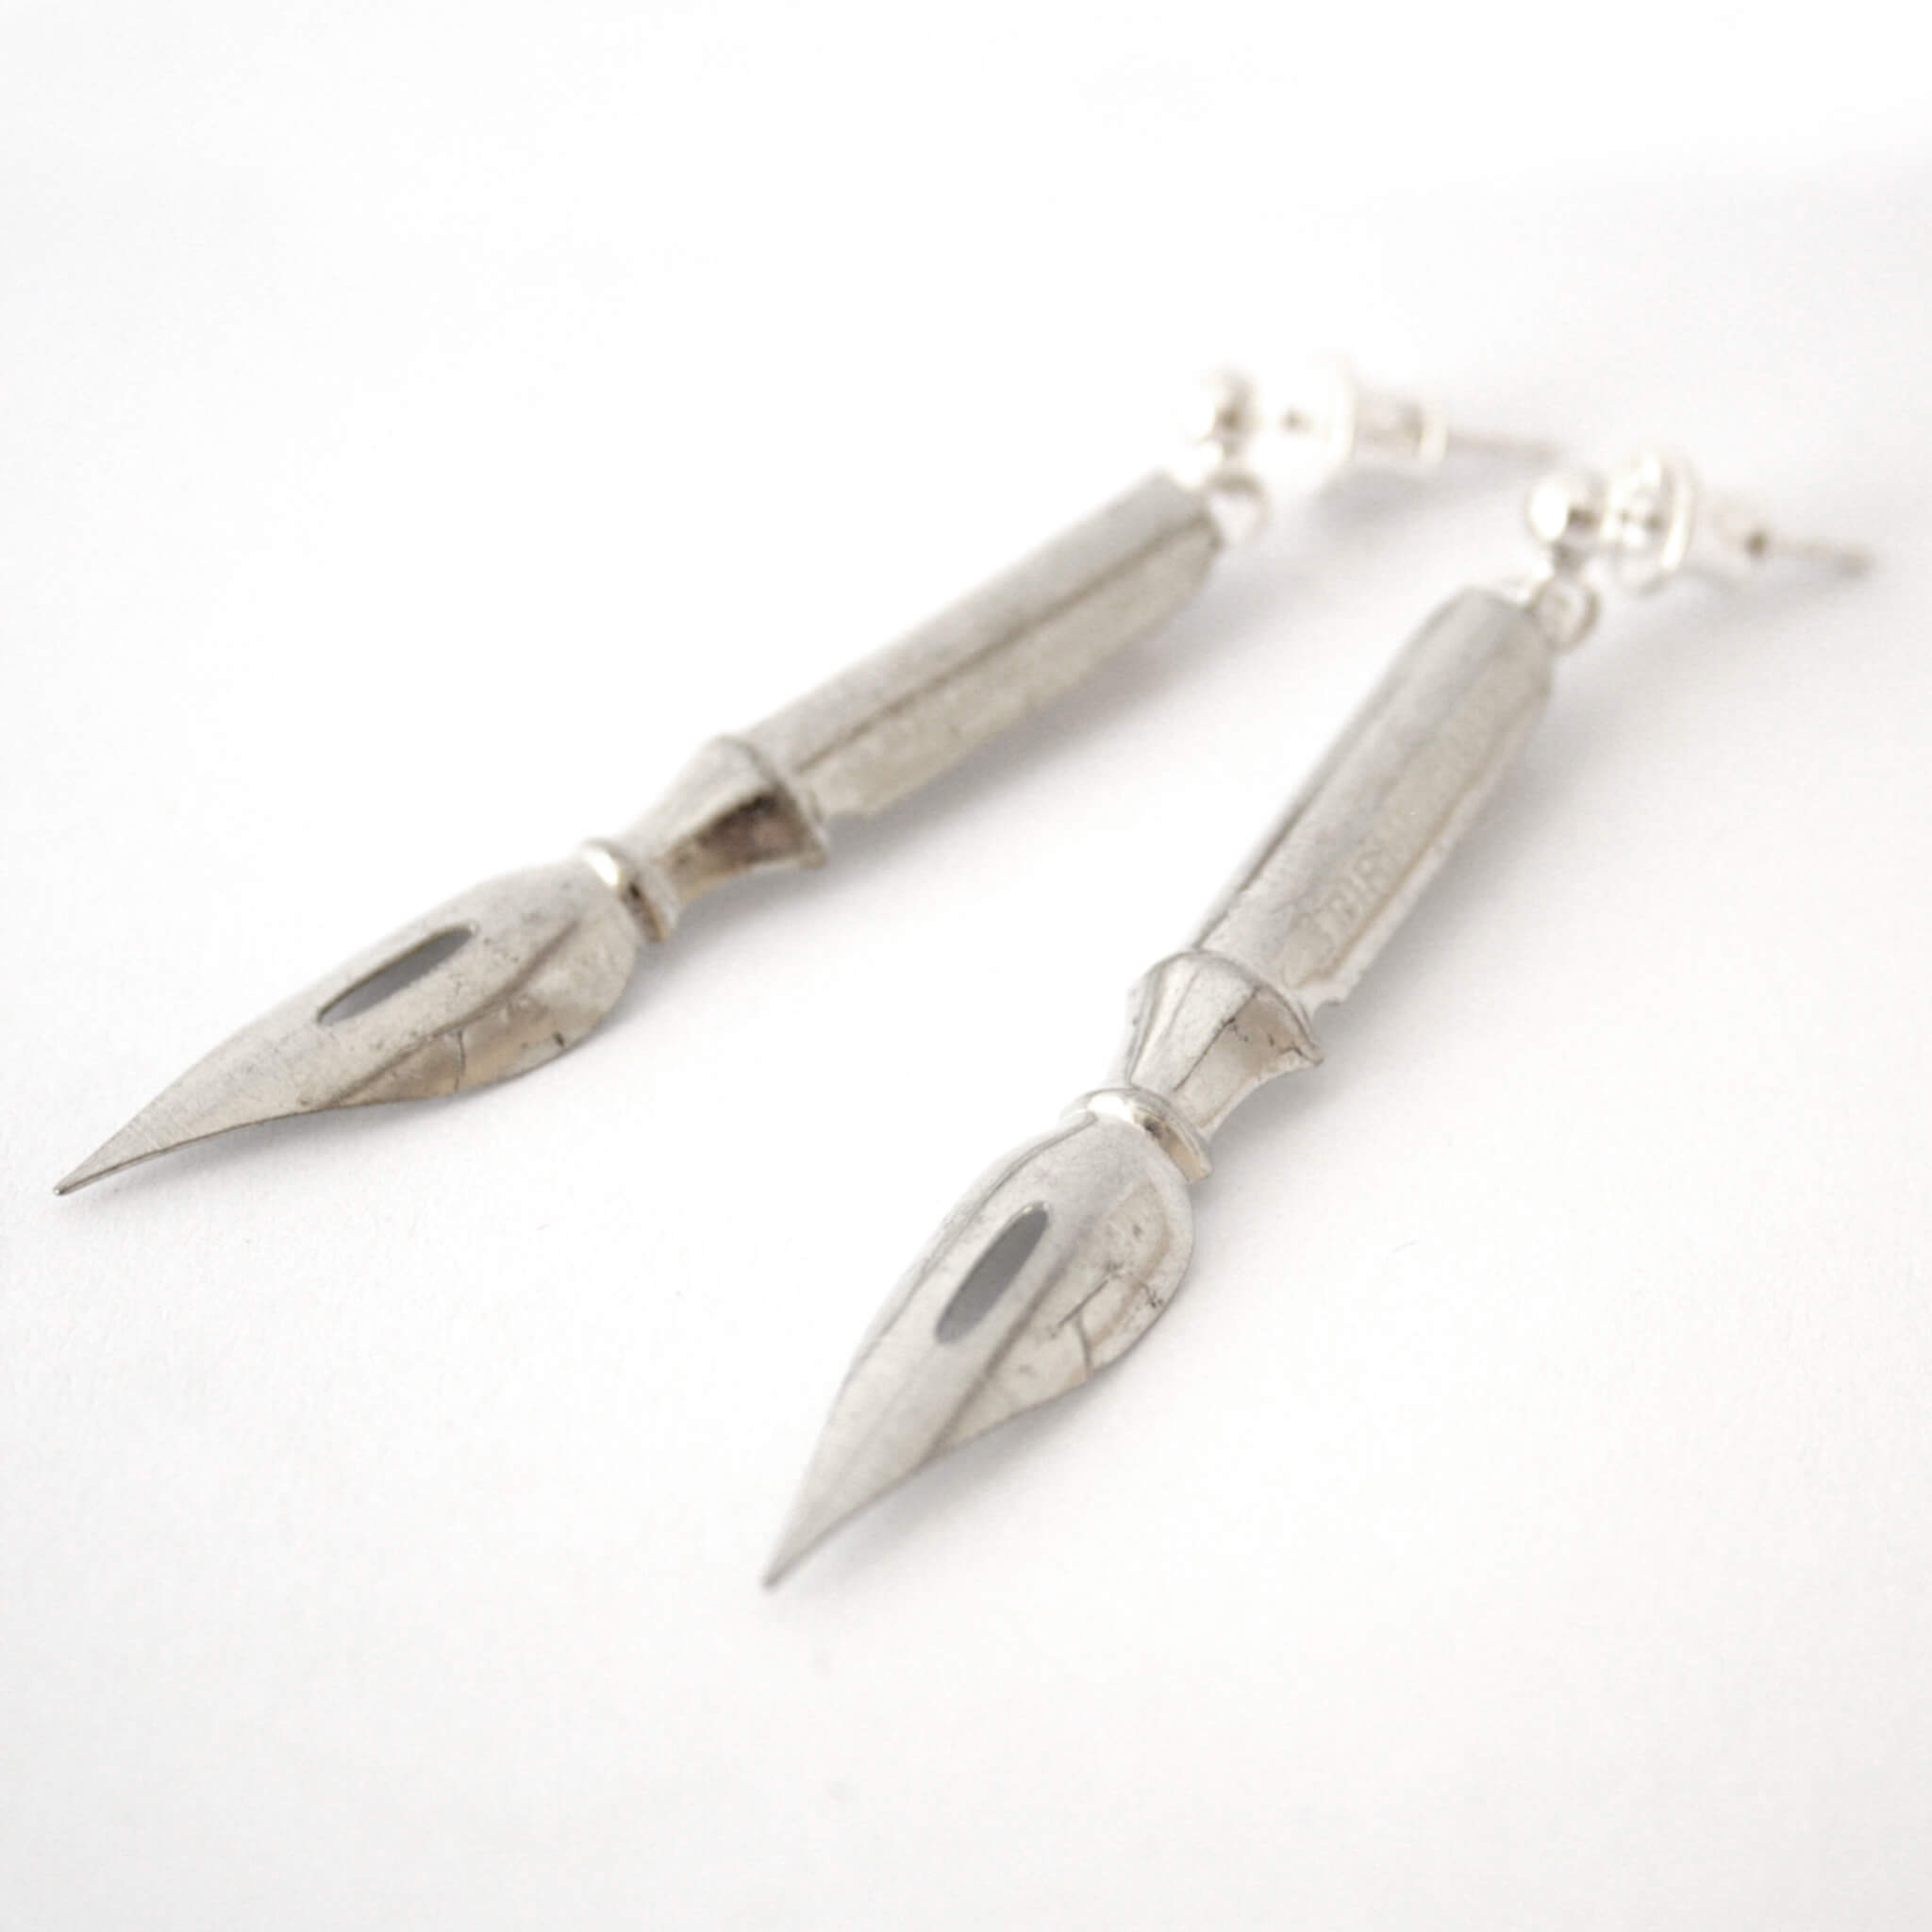 silver tone pen nib earrings lying on a piece of paper